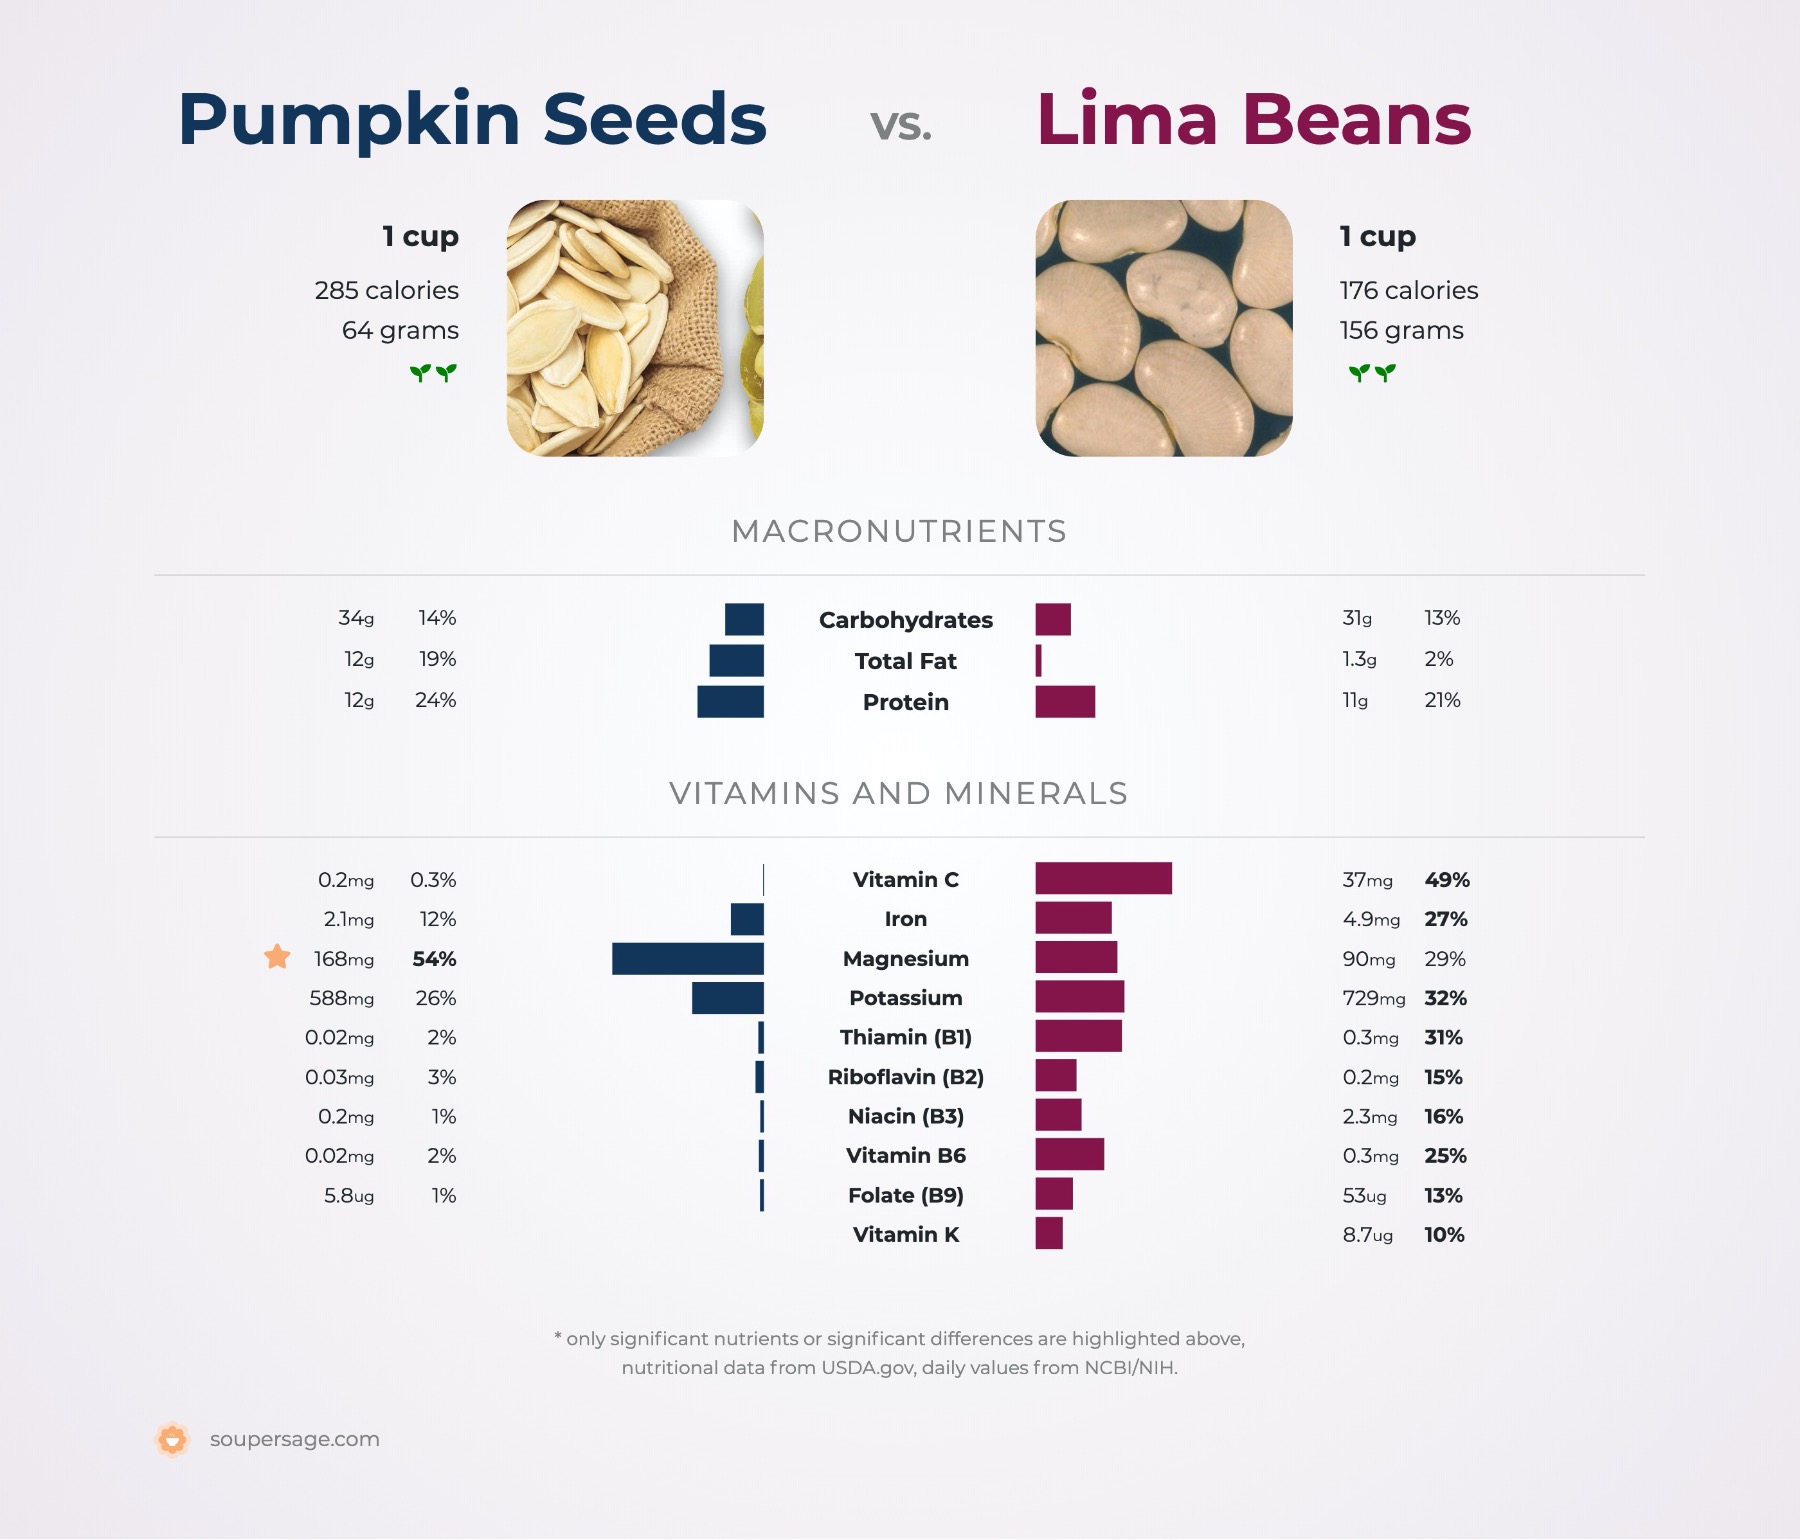 nutrition comparison of pumpkin seeds vs. lima beans